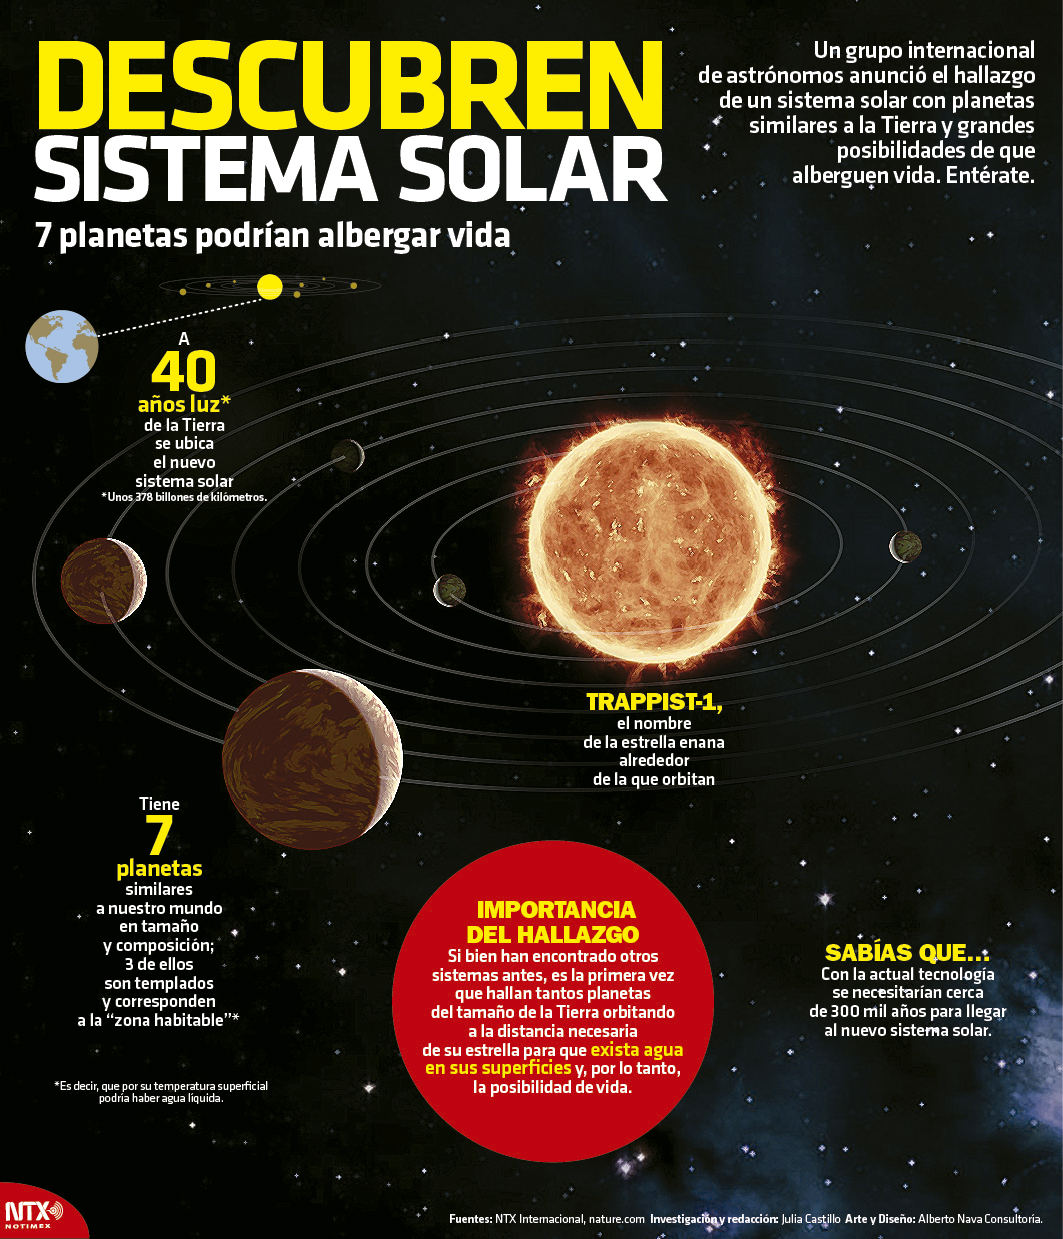 Descubren sistema solar; 7 planetas podran albergar vida